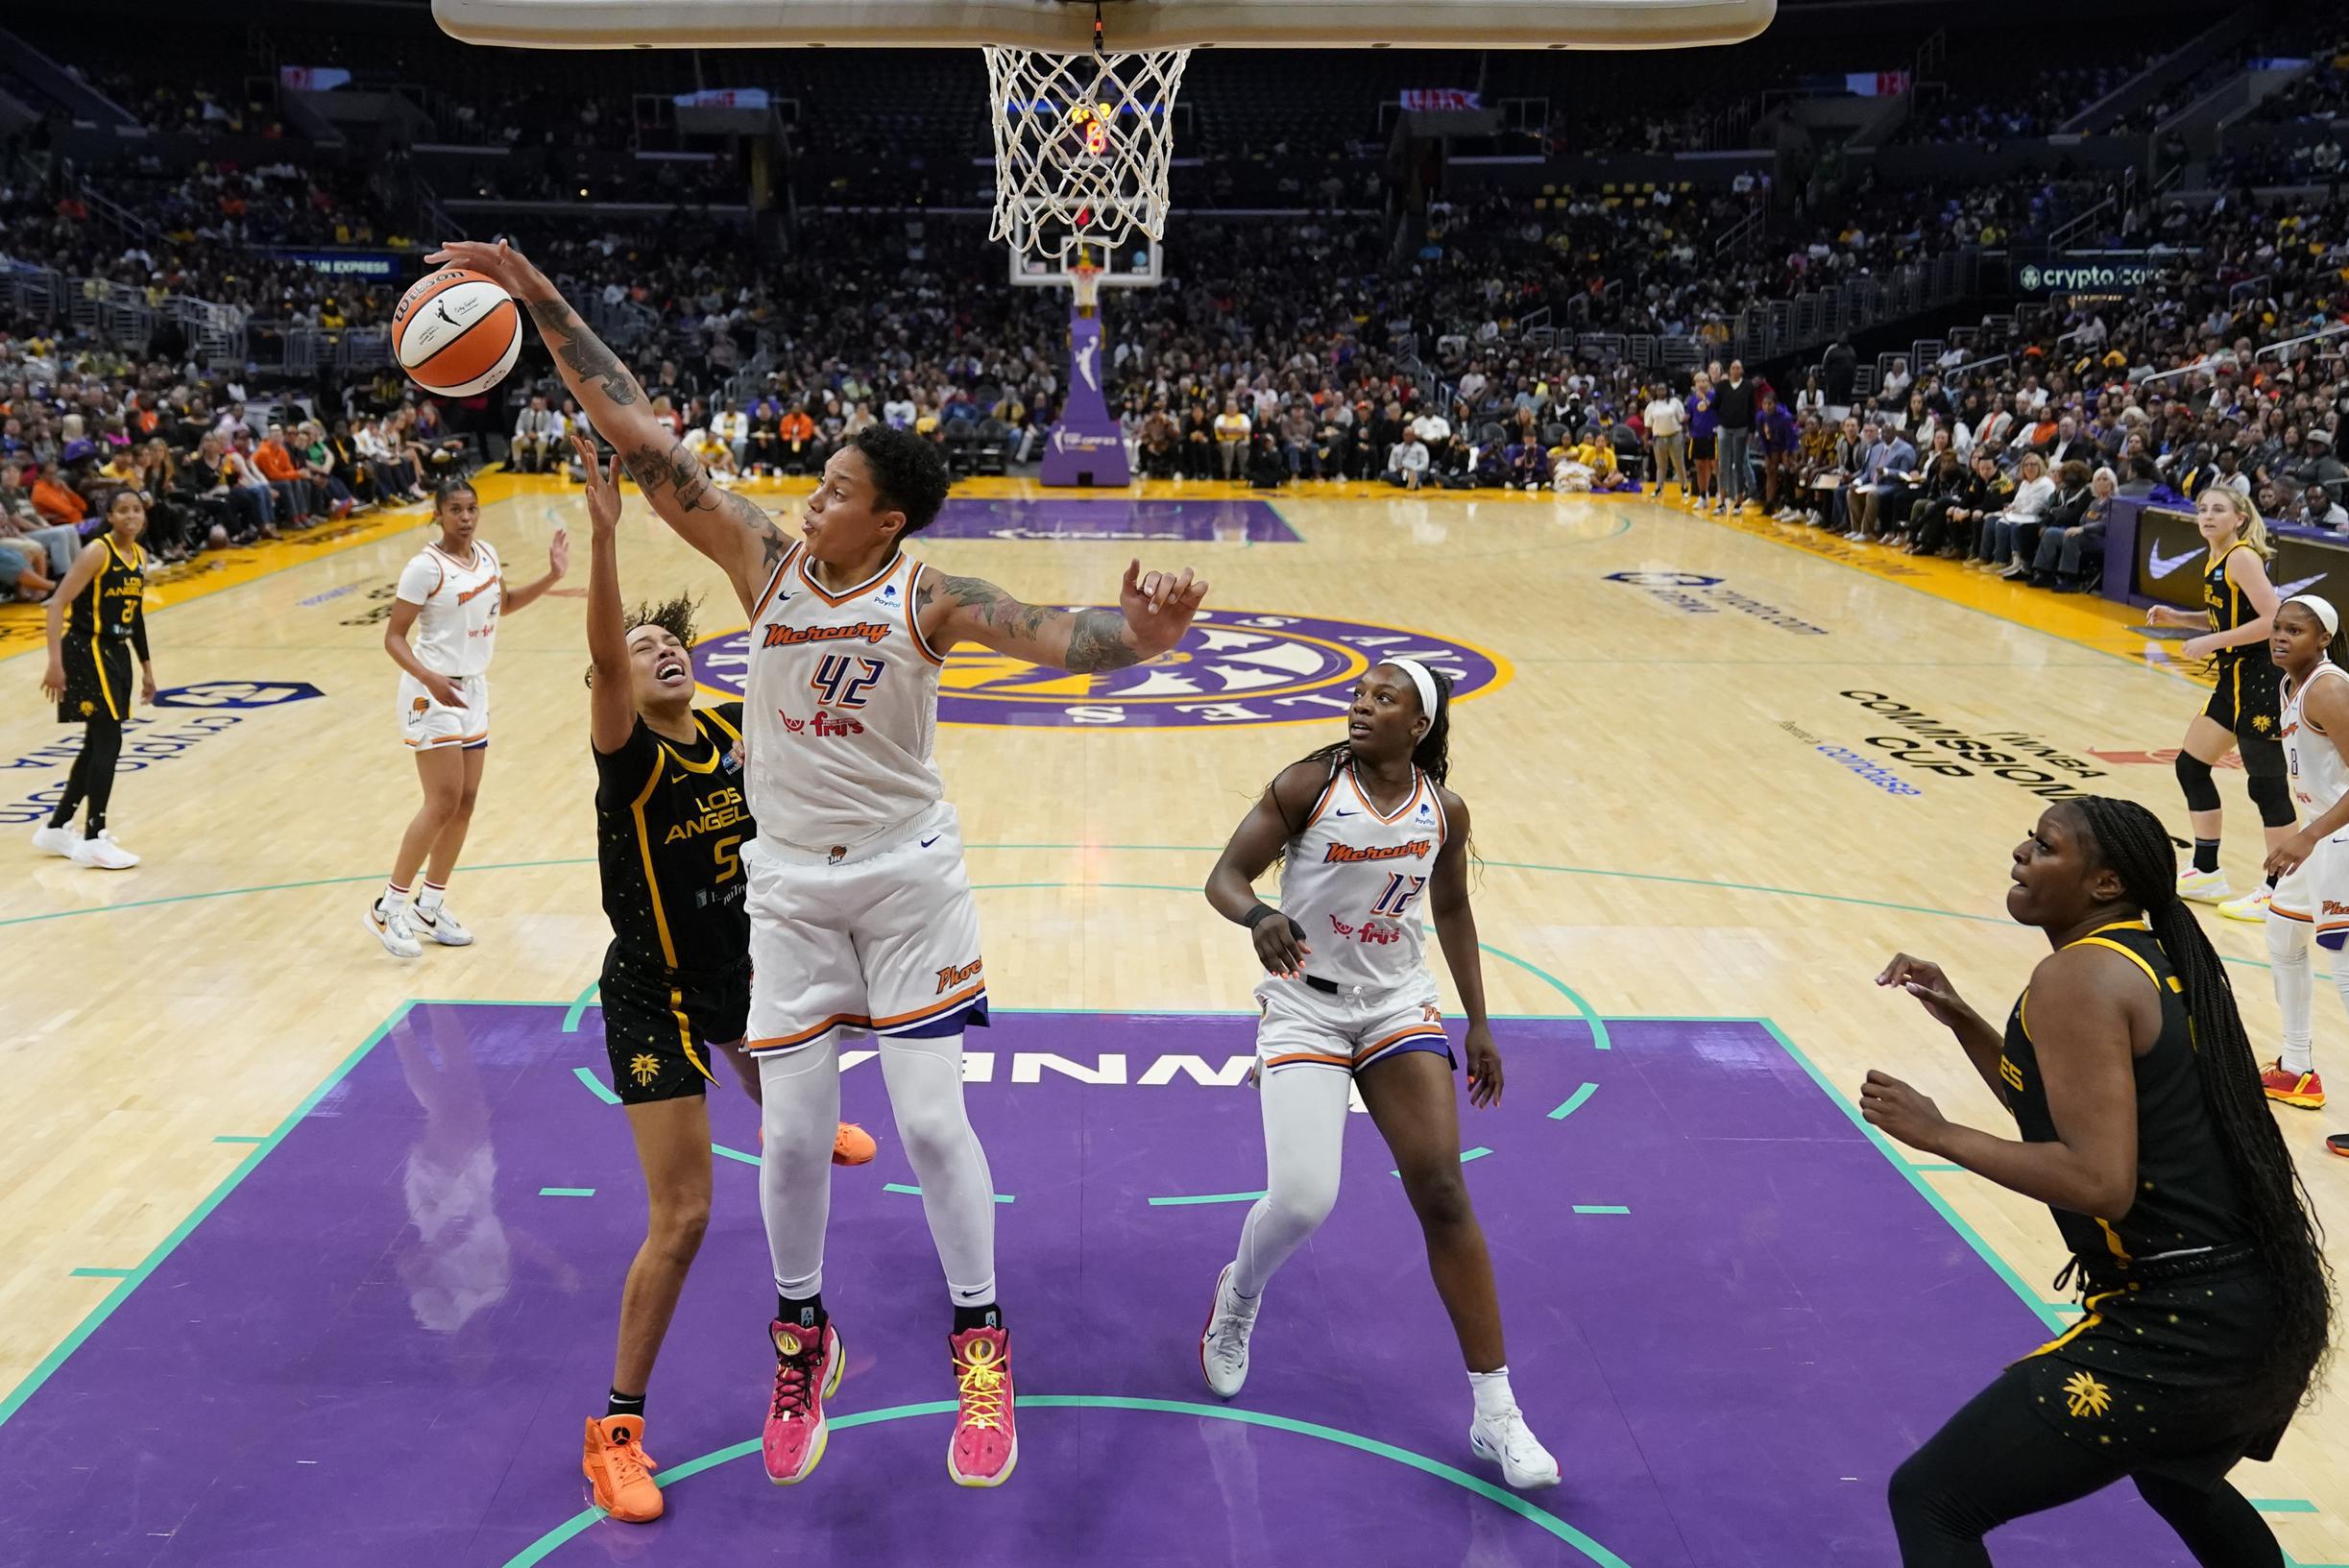 Sterke Brittney Griner bij comeback in WNBA,  Ann Wauters wint met Chicago Sky